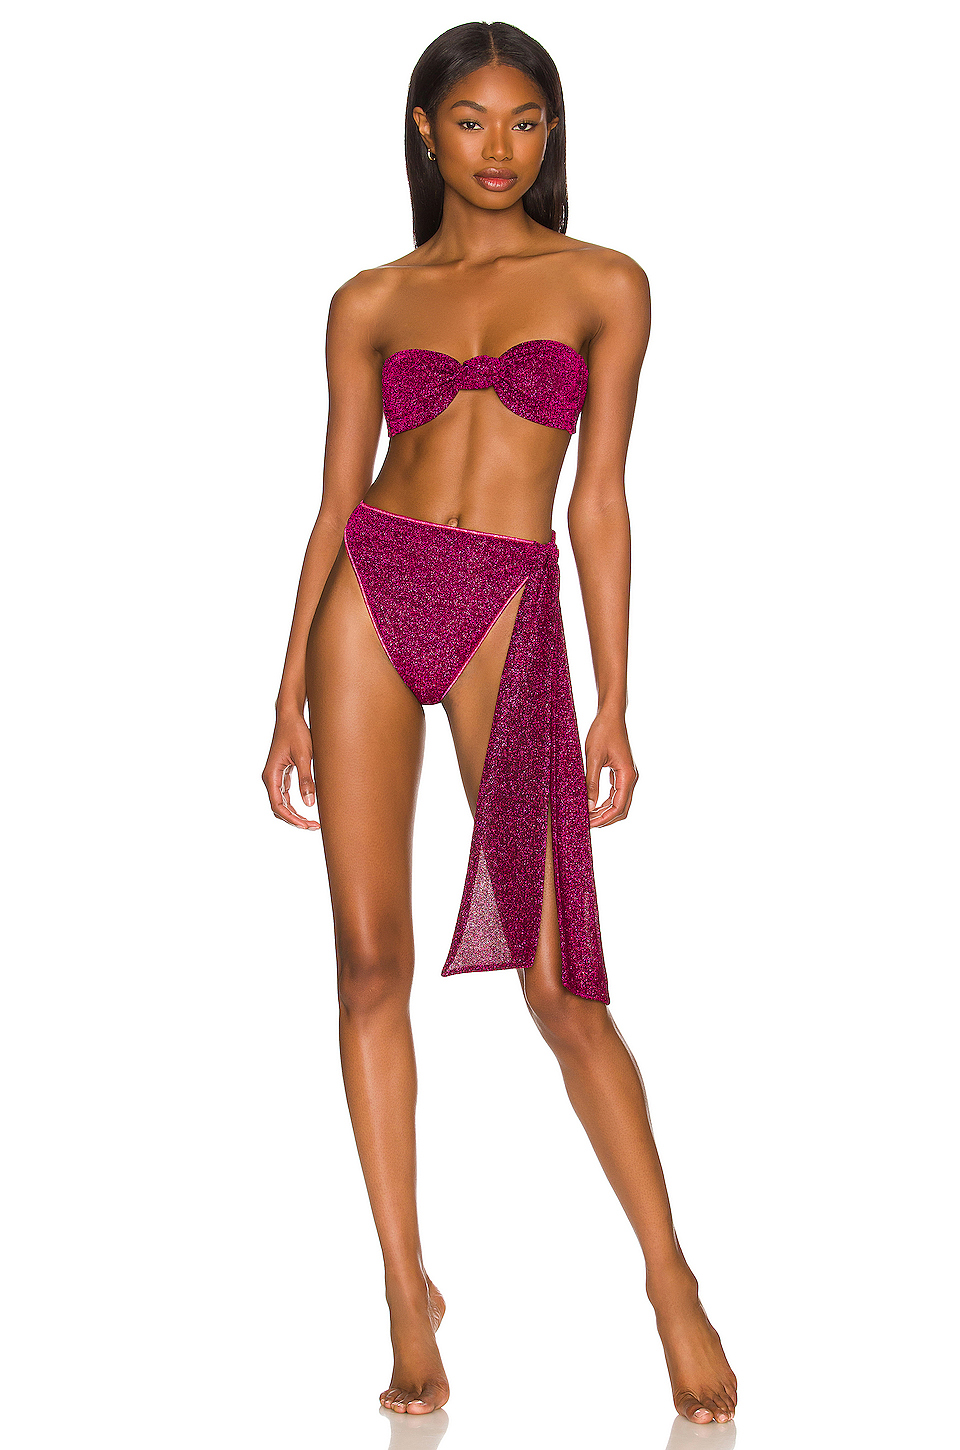 Lumiere Knotted Bikini Set展示图